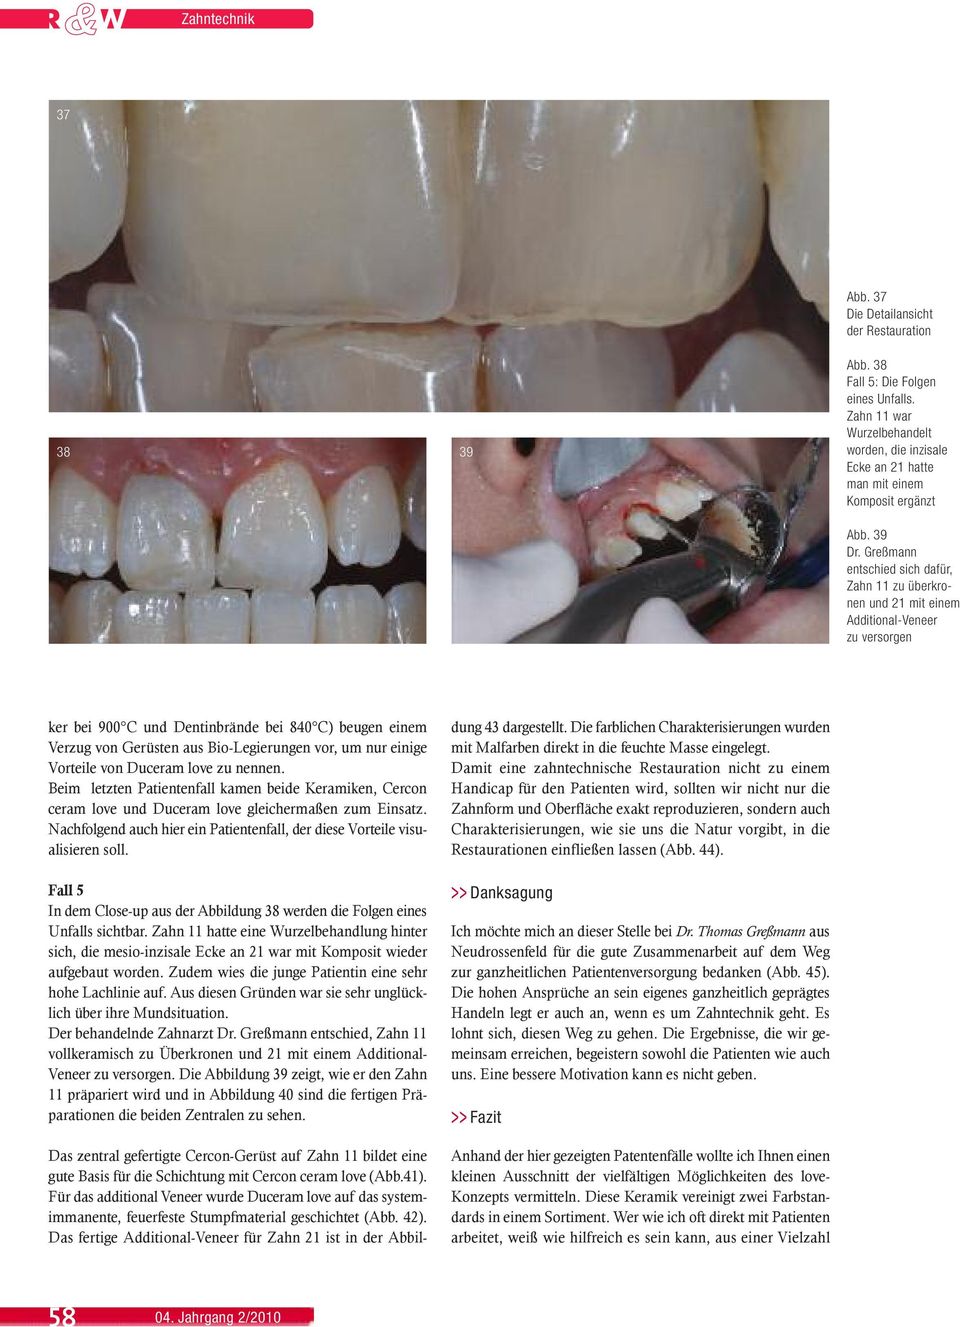 Greßmann entschied sich dafür, Zahn 11 zu überkronen und 21 mit einem Additional-Veneer zu versorgen ker bei 900 C und Dentinbrände bei 840 C) beugen einem Verzug von Gerüsten aus Bio-Legierungen